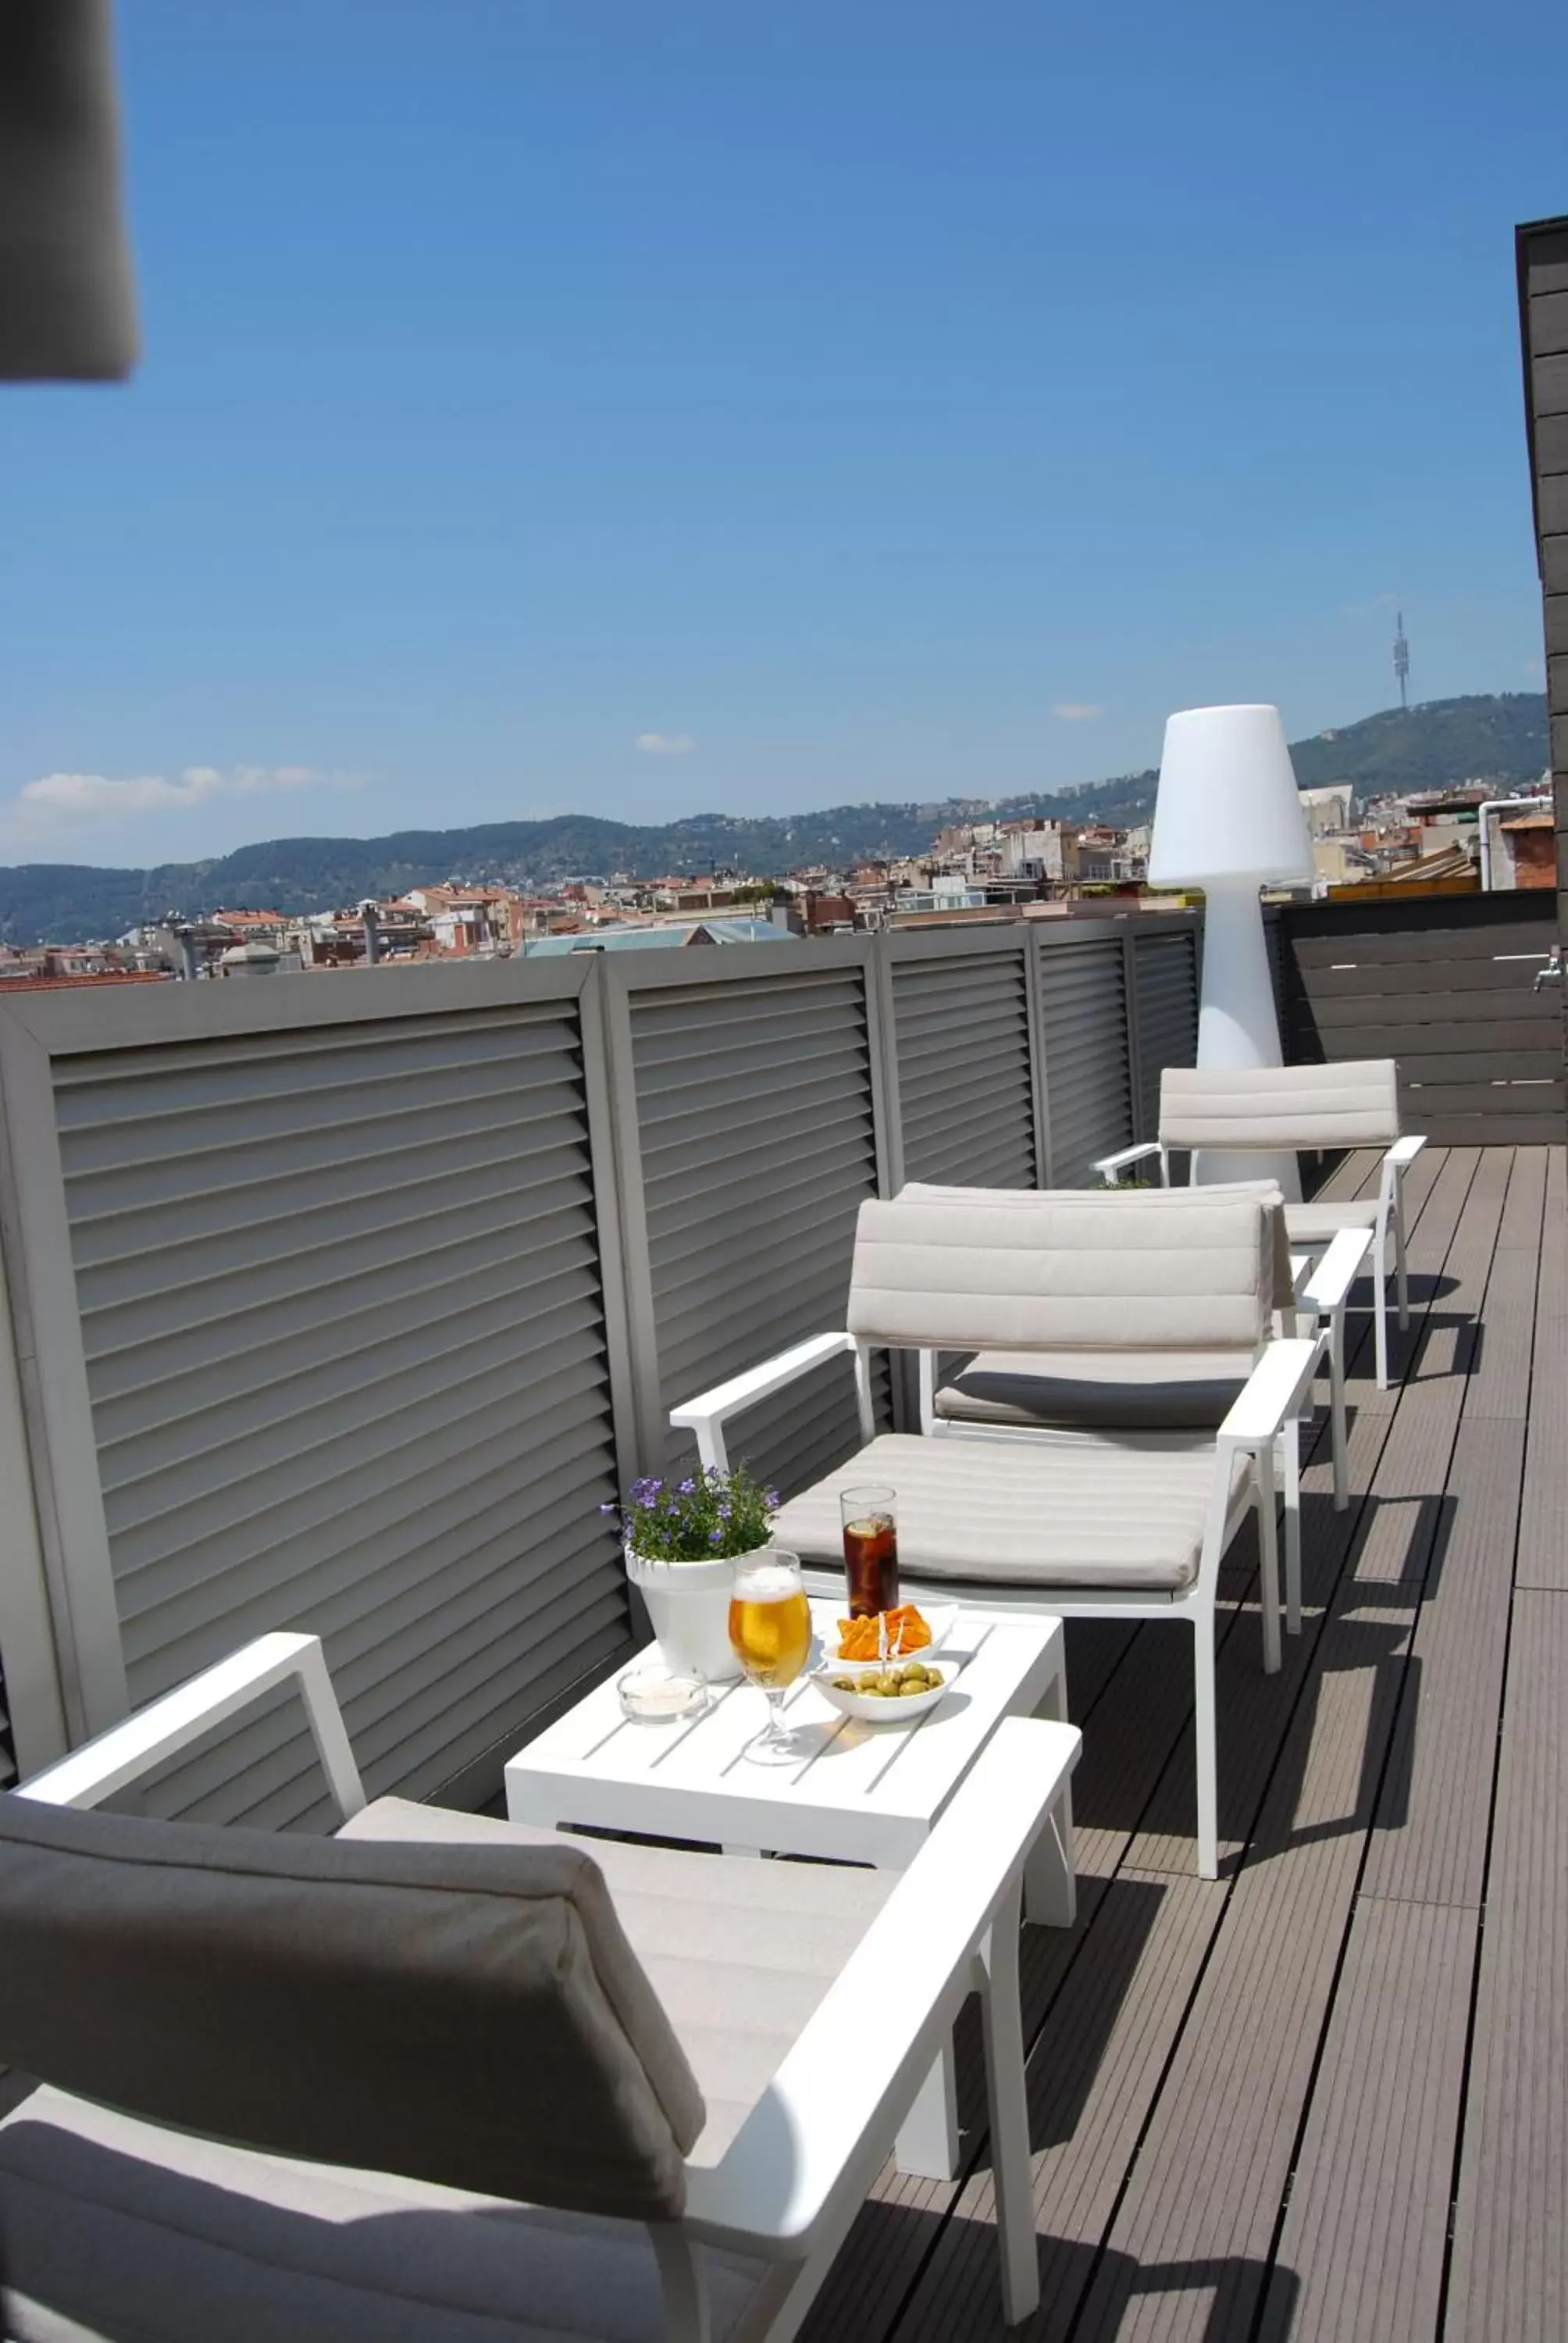 Balcony/Terrace, Patio/Outdoor Area in Zenit Barcelona